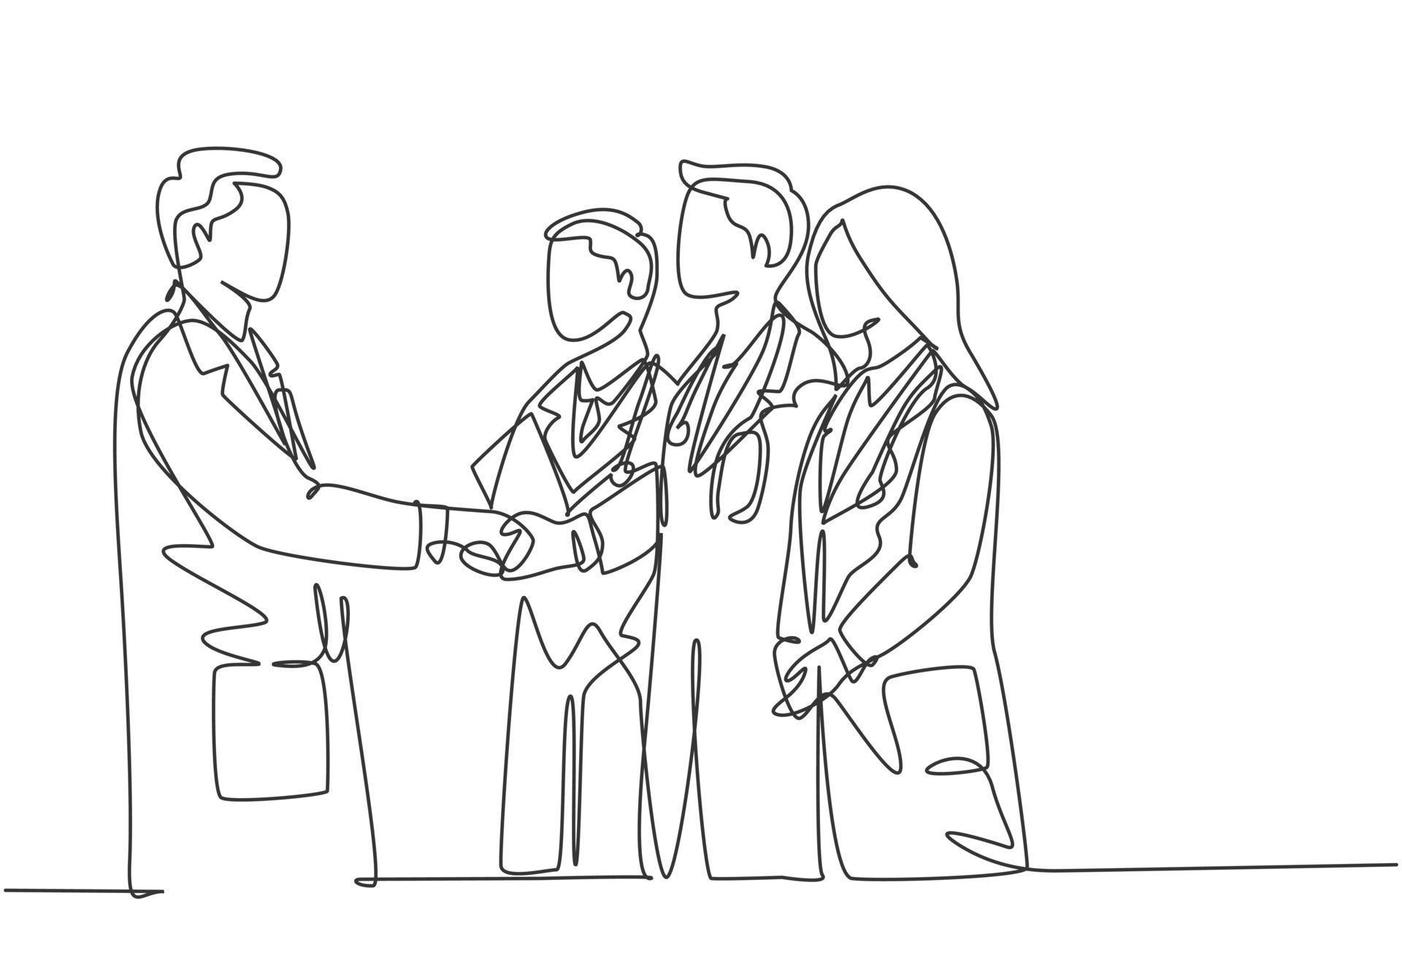 um desenho de linha única contínua do chefe do hospital dando um aperto de mão de parabéns a um grupo de médicos pelas realizações. conceito de prêmio médico linha única desenhar ilustração vetorial de design gráfico vetor